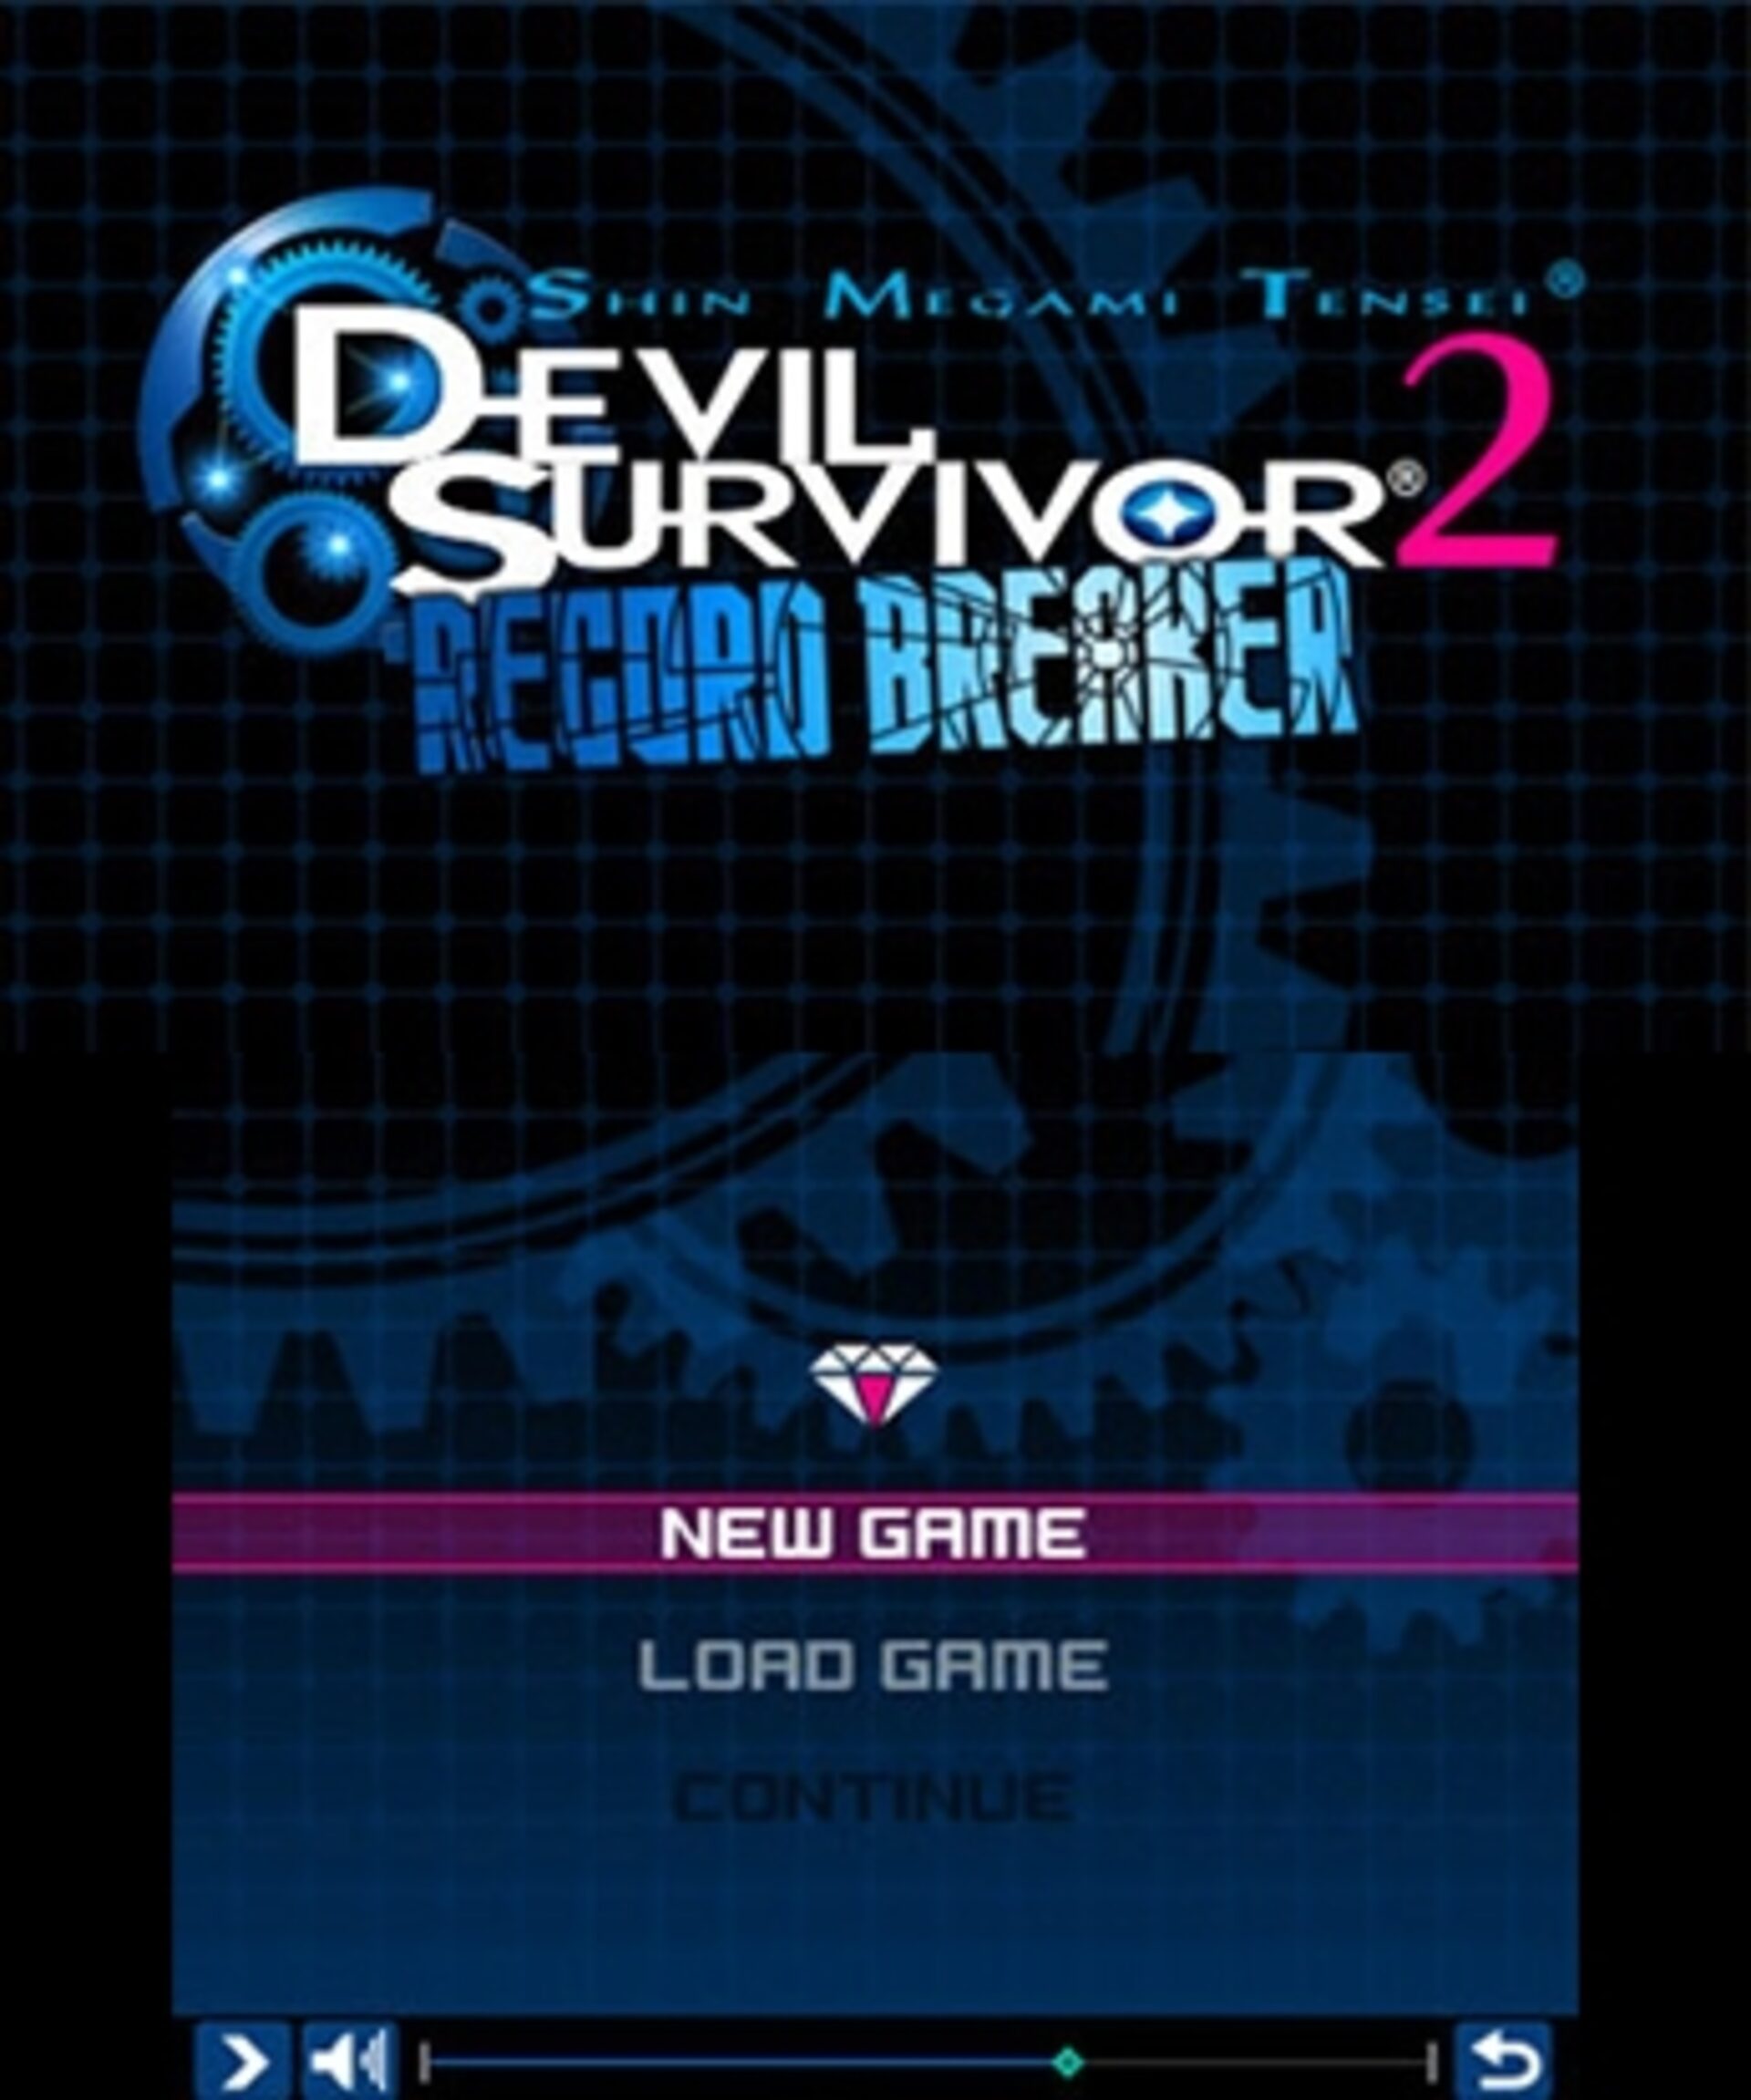 Shin Megami Tensei: Devil Survivor 2 Record Breaker Review (3DS